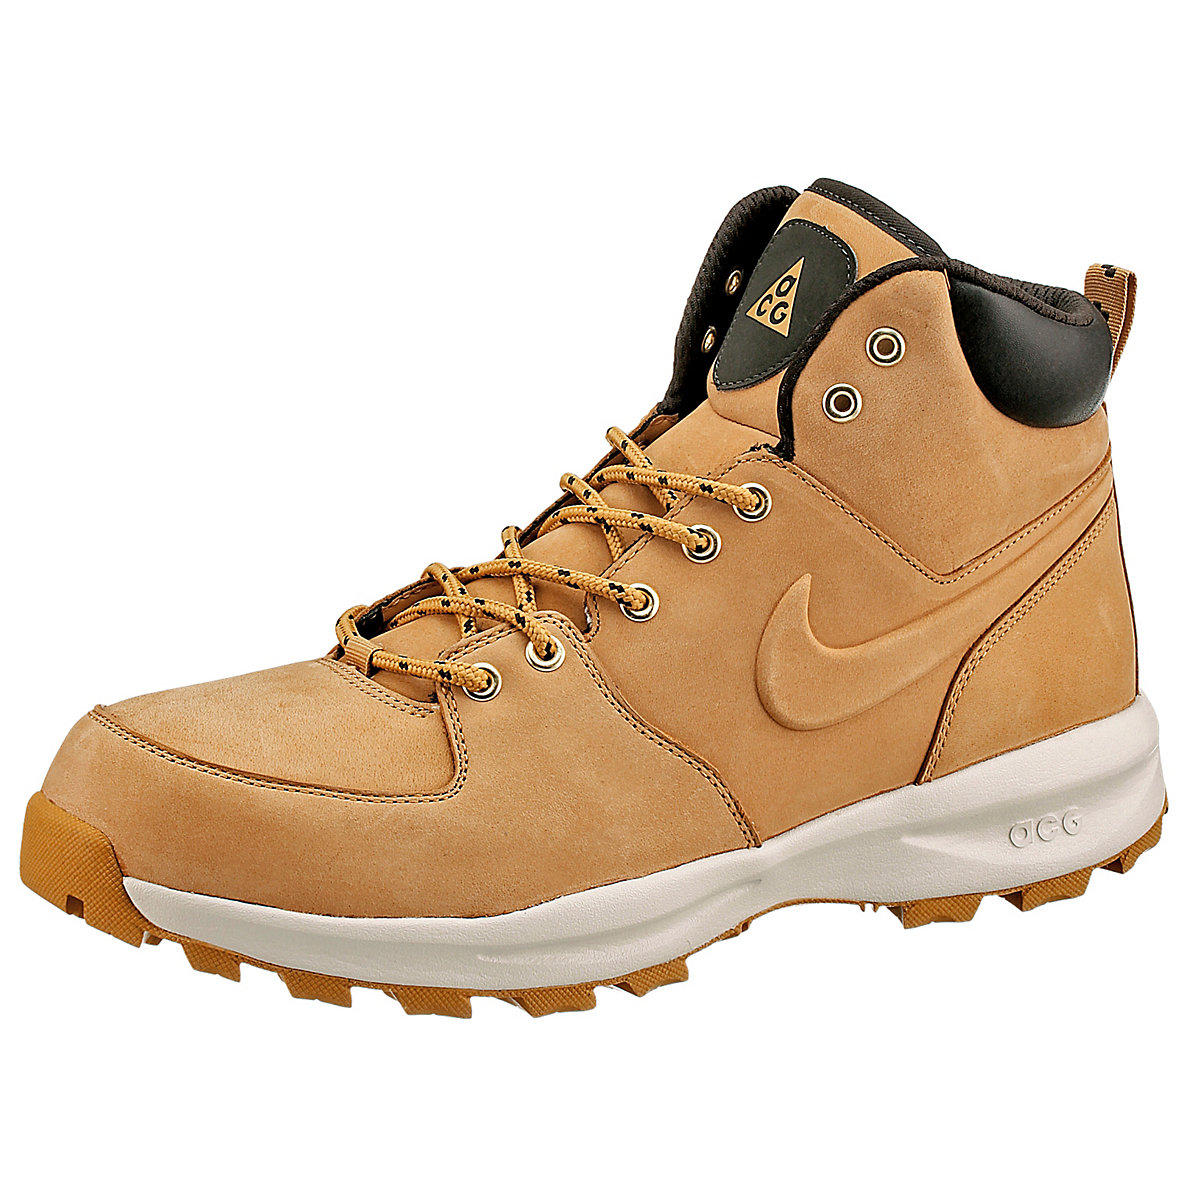 Nike Sportswear Manoa Leather Trekkingstiefel cognac